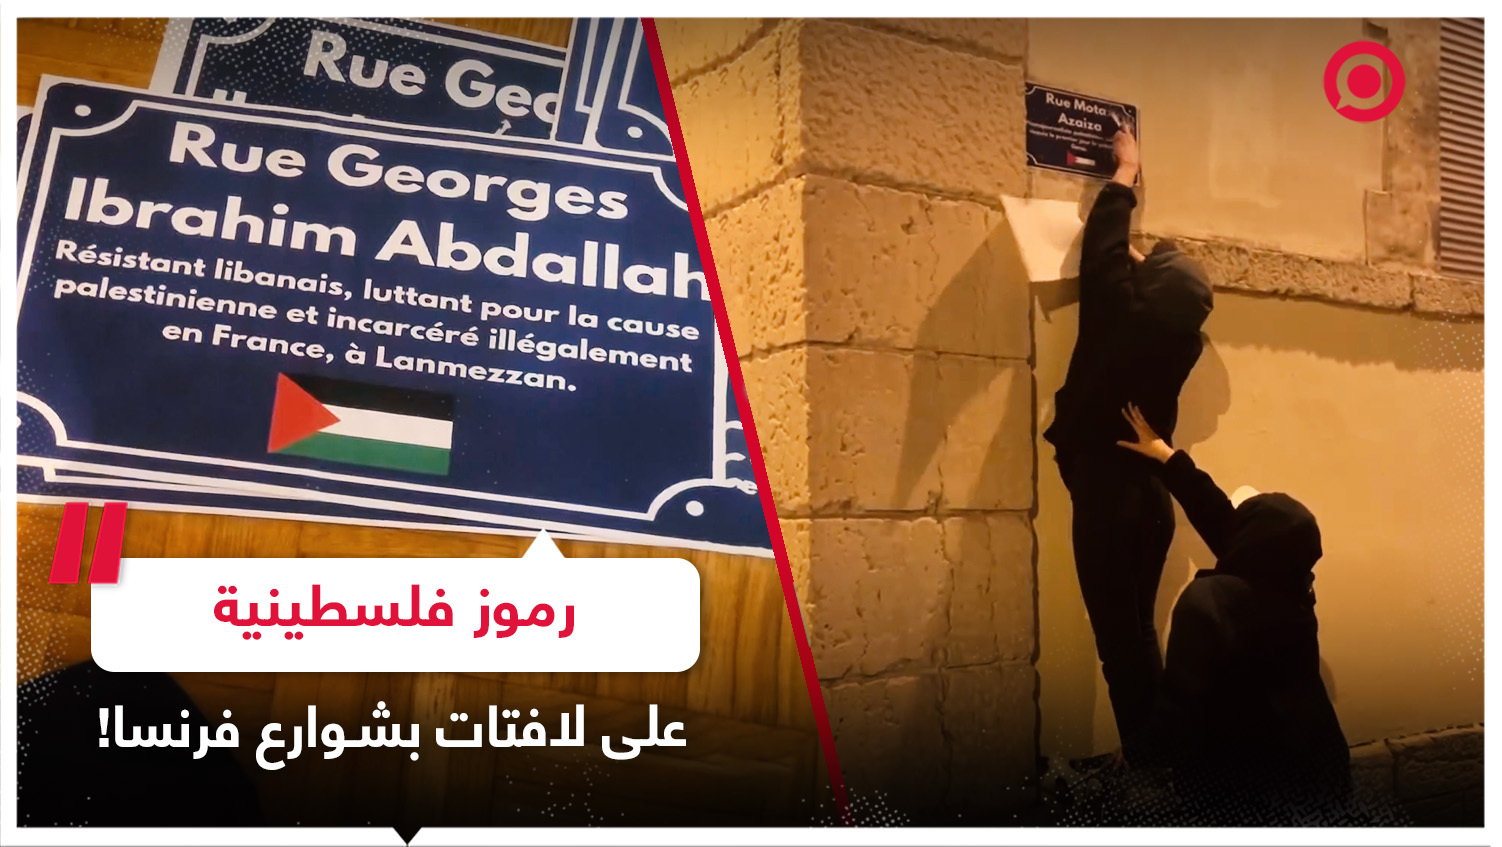 نشطاء يلصقون أسماء رموز وشخصيات فلسطينية على لافتات بشوارع مدينة ليون الفرنسية